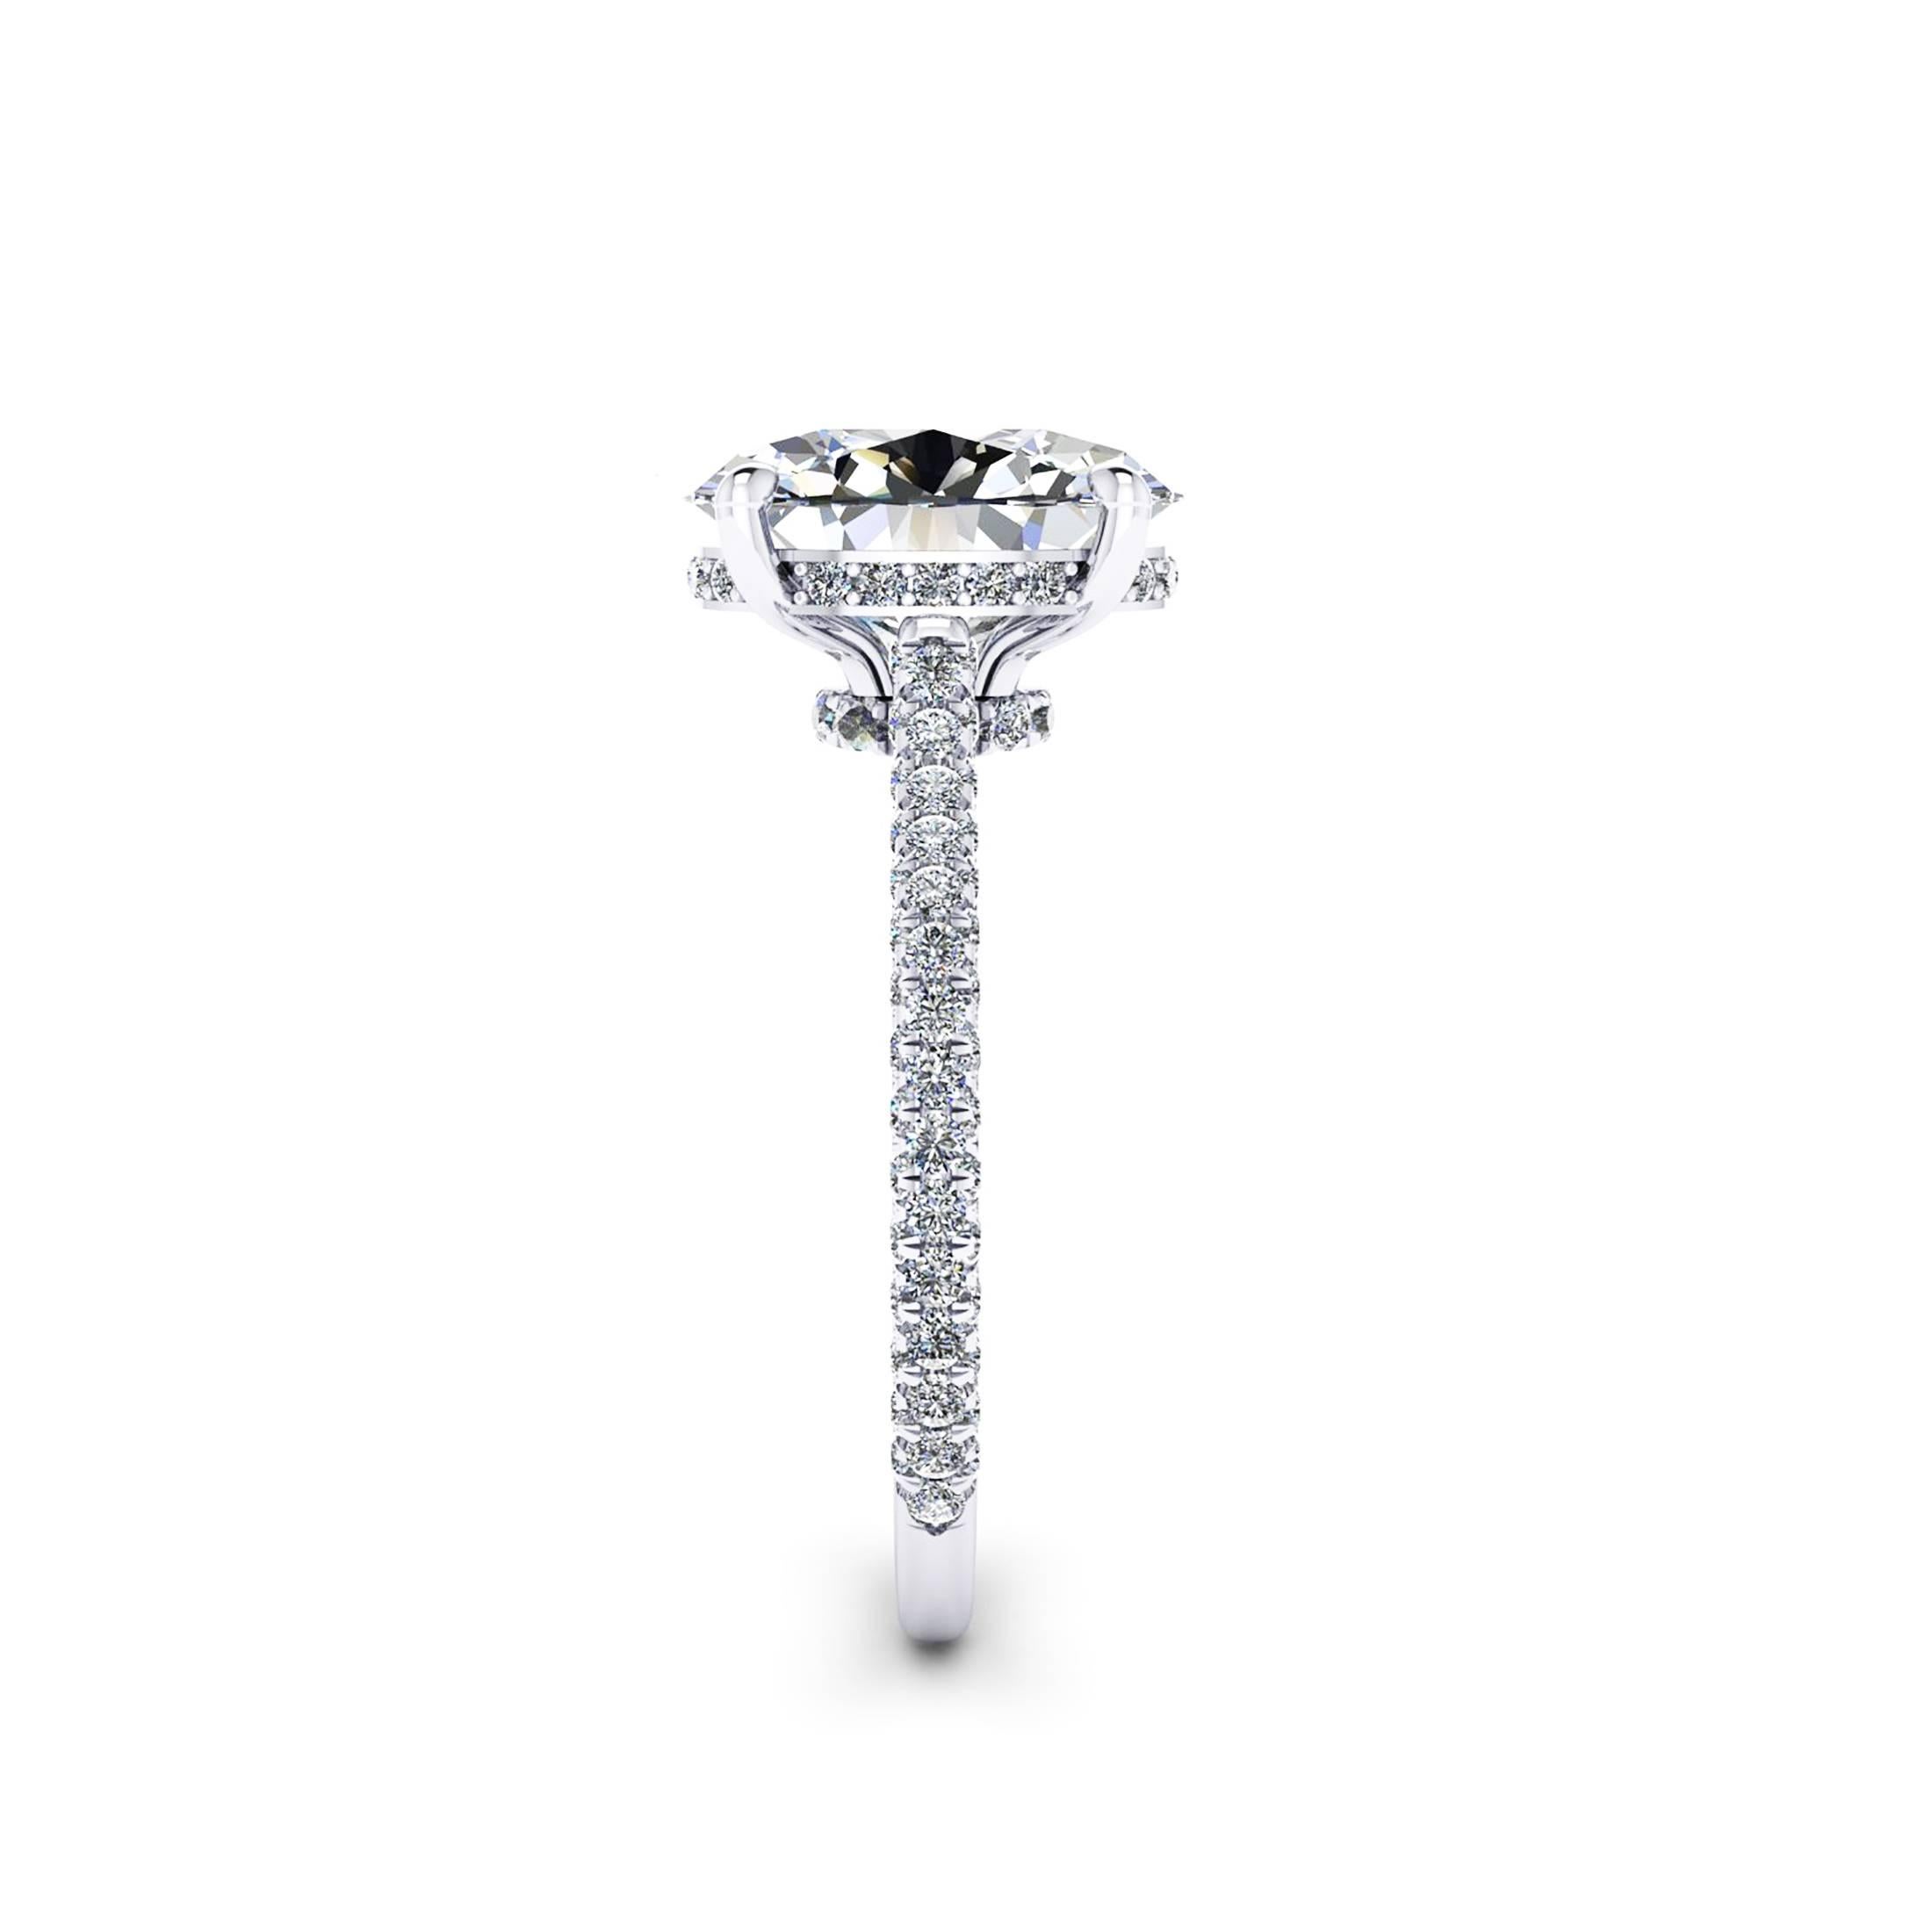 0.9 carat oval diamond ring